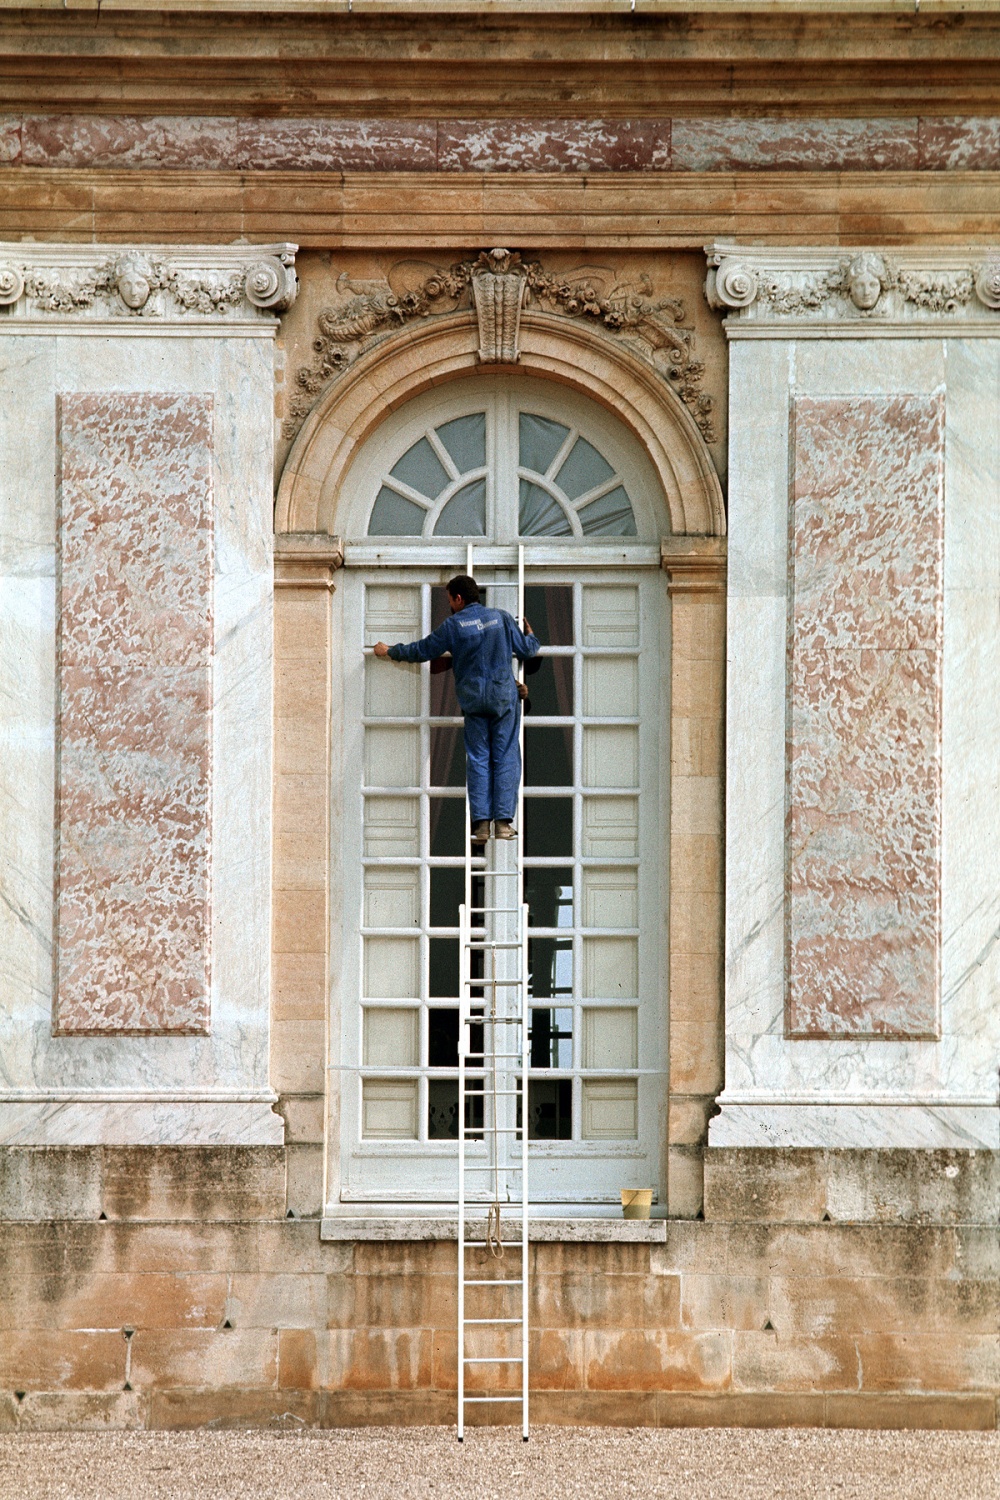 bill-hocker-window-washer-versailles-france-1972